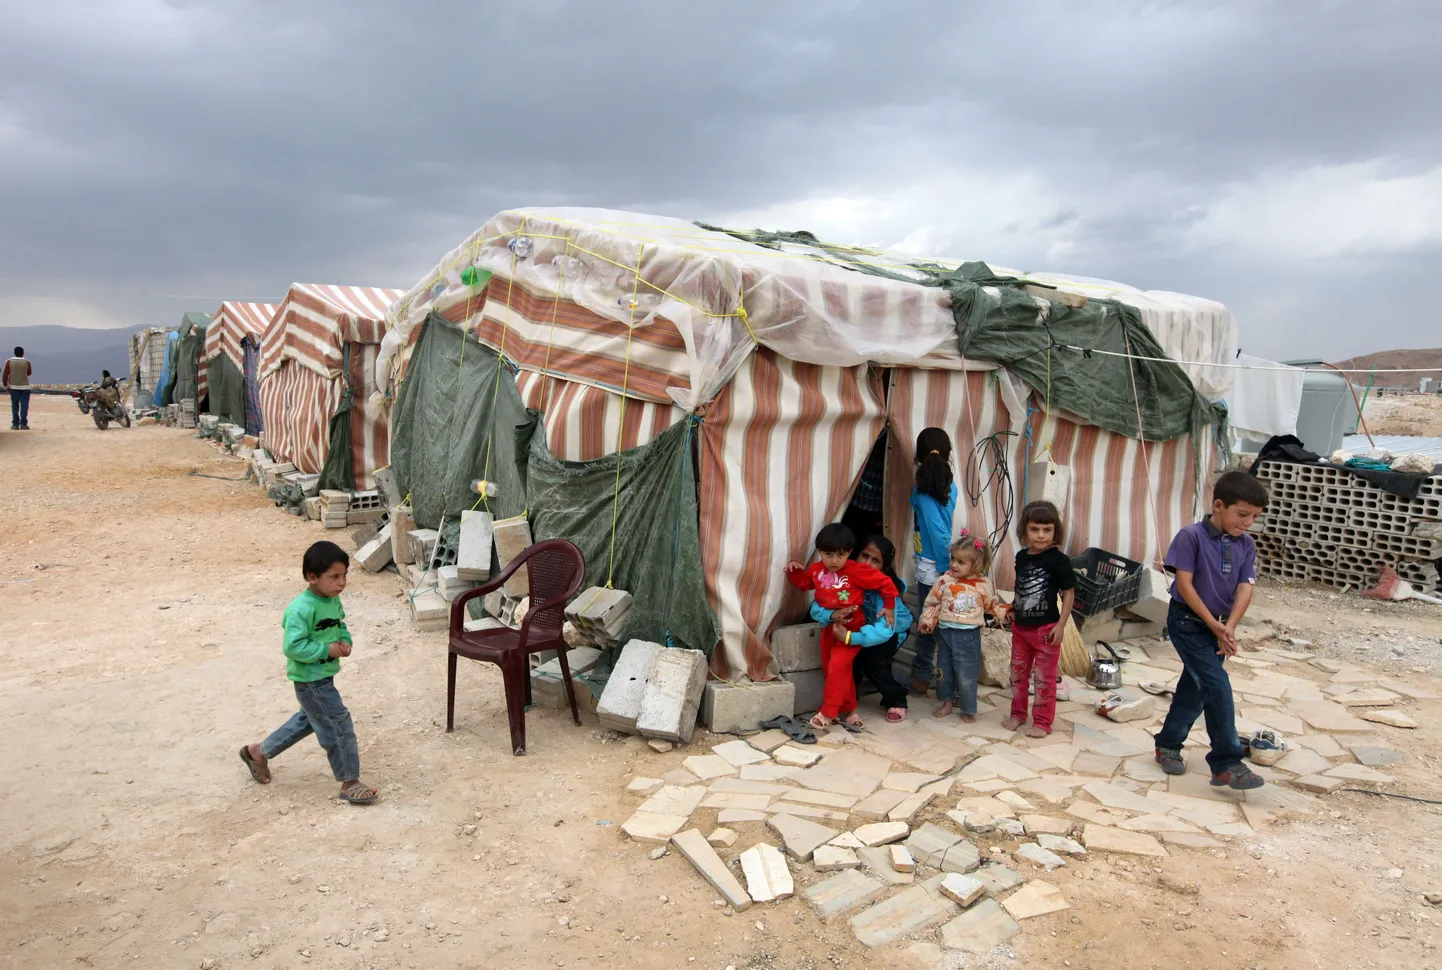 После такого палаточного городка центры для беженцев в западных странах кажутся роскошными, но никакие удобства не заменят свободу.